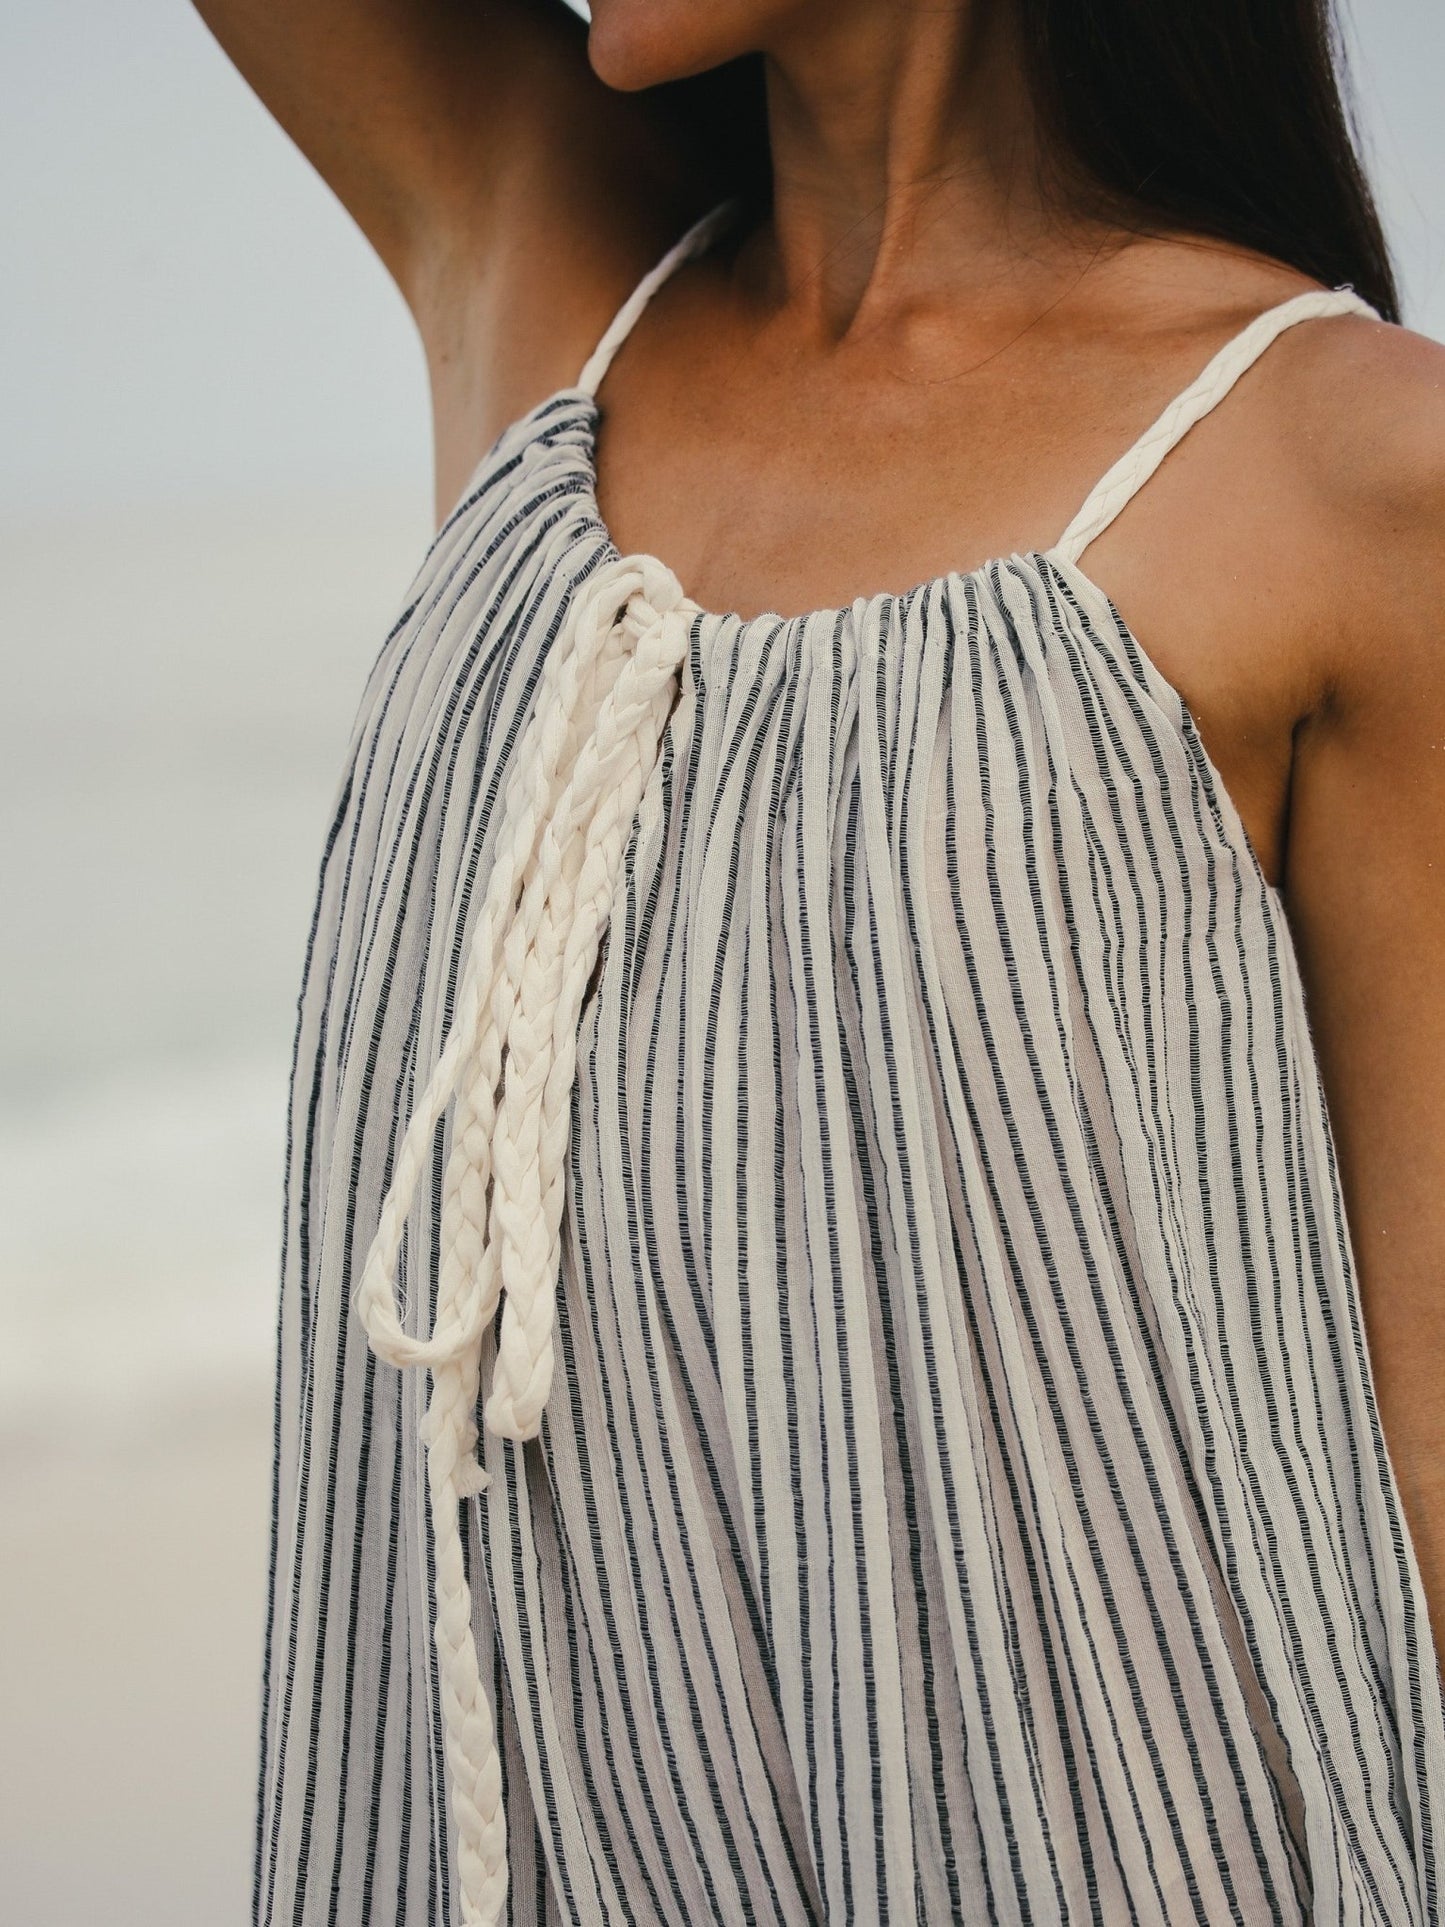 Breeze Beach Dress - Black Stripes - Mack & Harvie